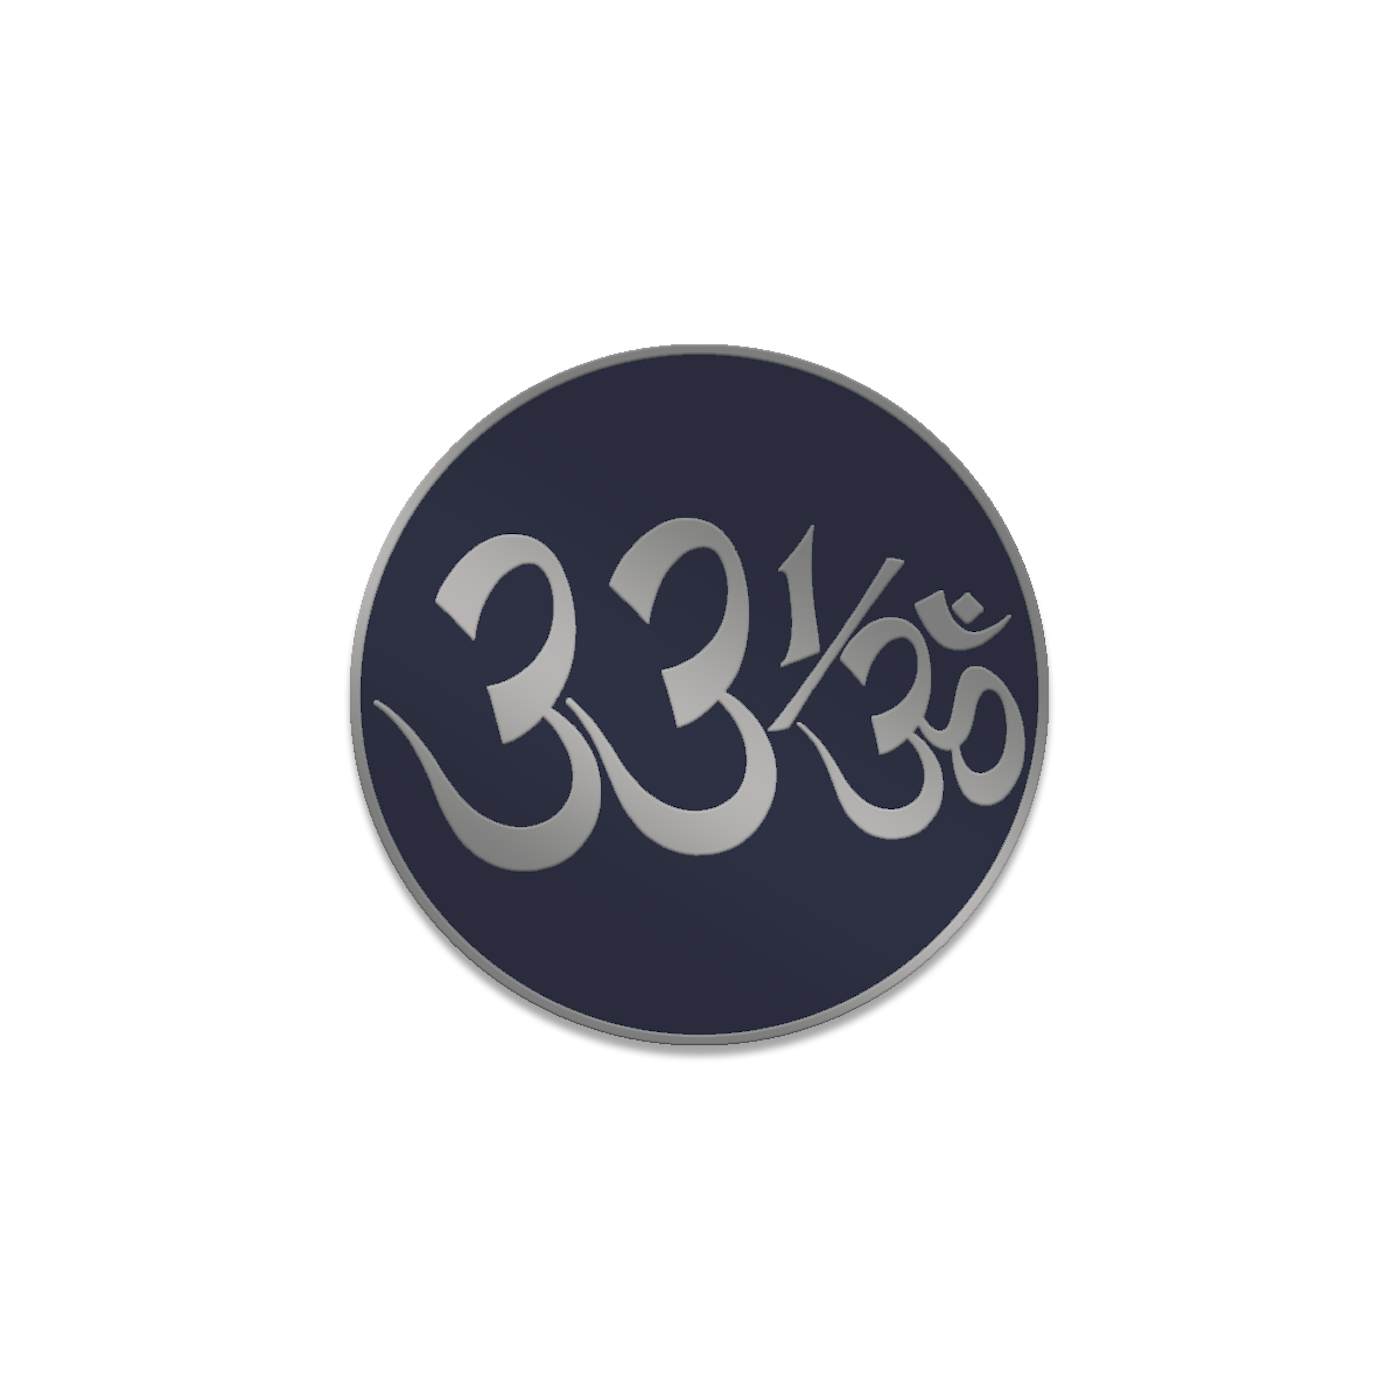 George Harrison 33 1/3 Logo Enamel Pin